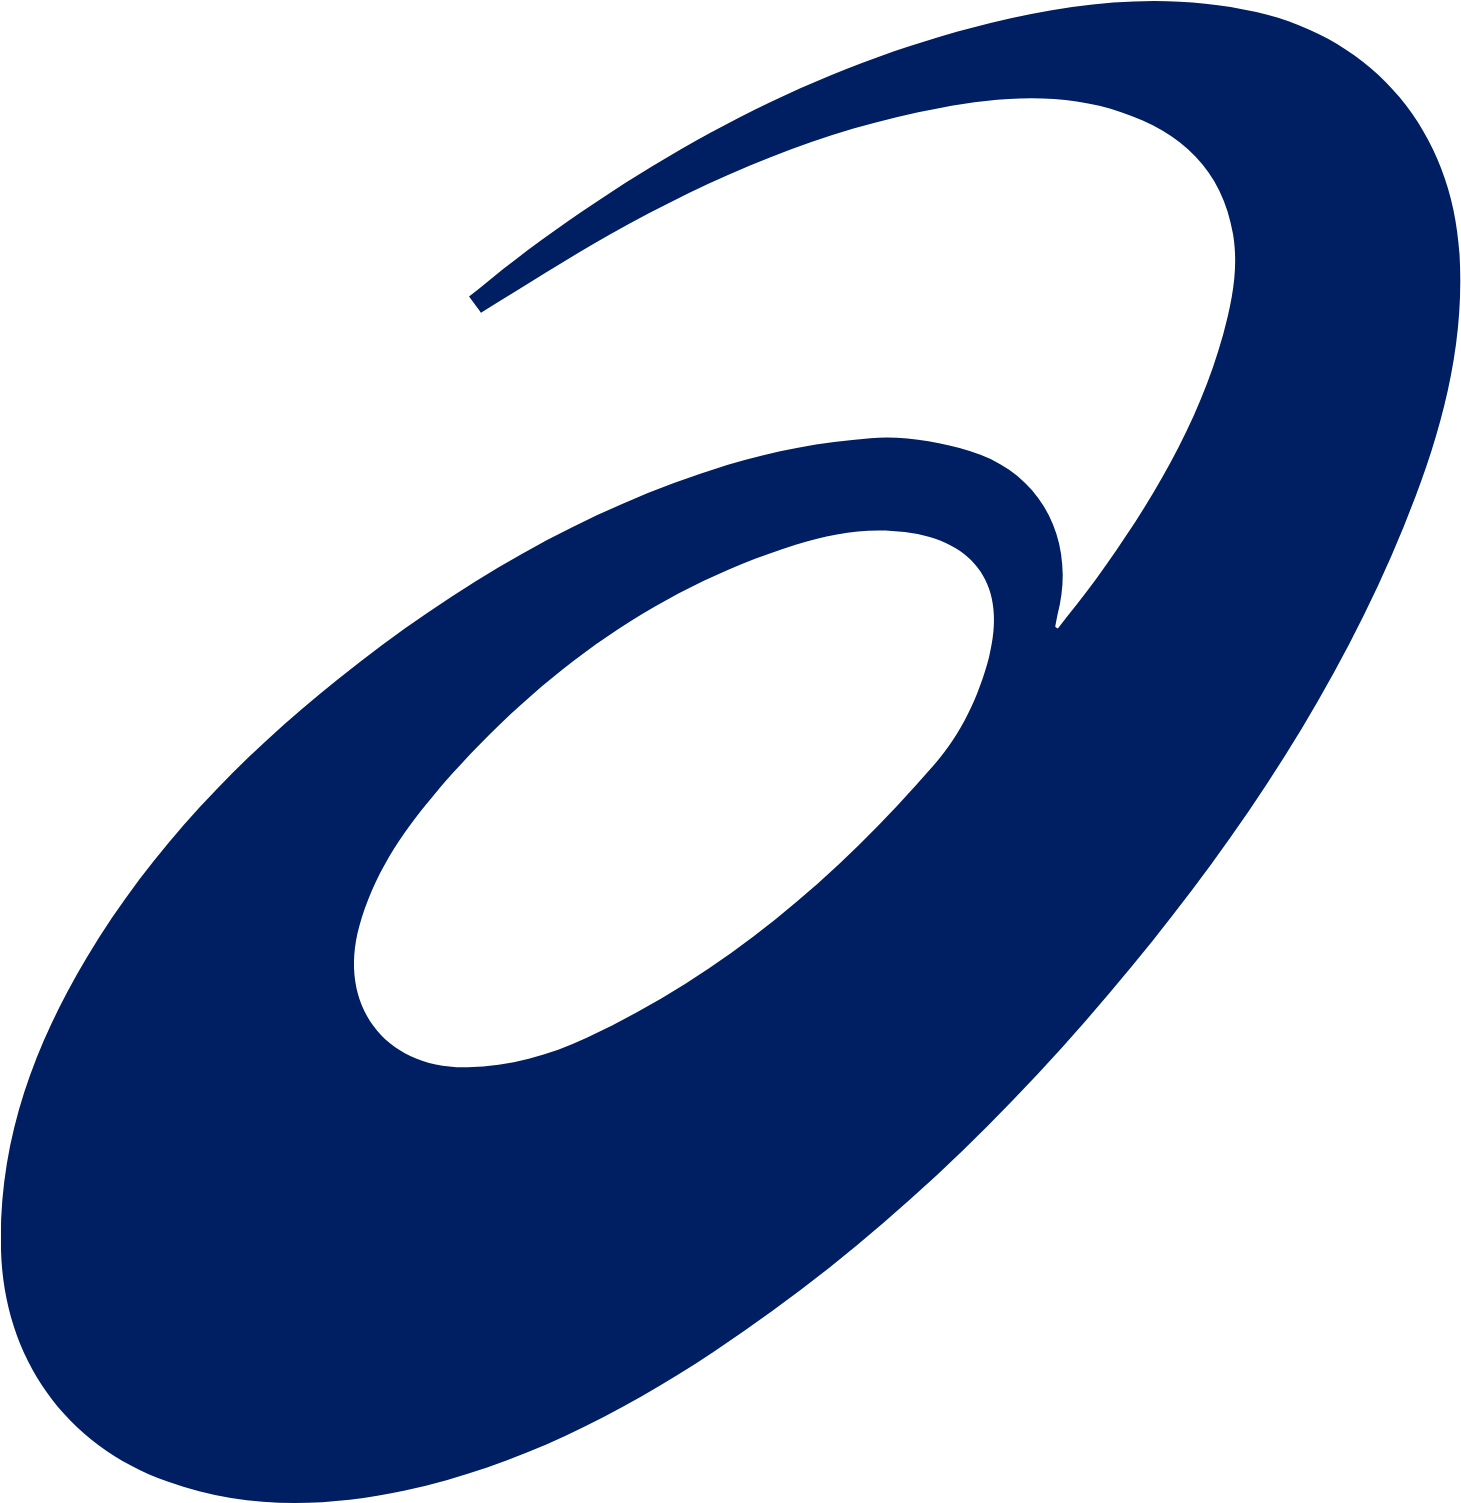 ASICS Corporation logo (transparent PNG)